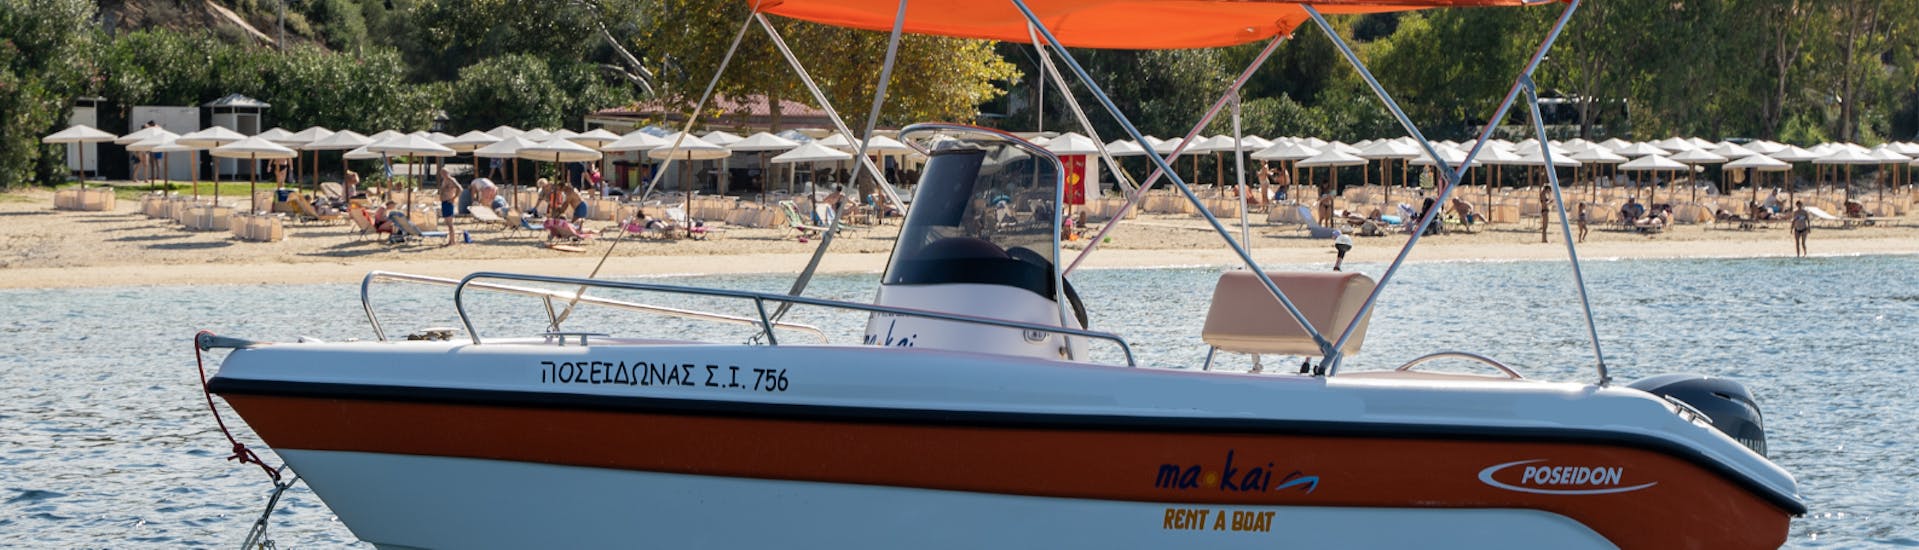 La nostra imbarcazione in acqua per il Noleggio barca a Ouranoupoli (fino a 6 persone) senza patente con Poseidon Water Sports Ouranoupoli.